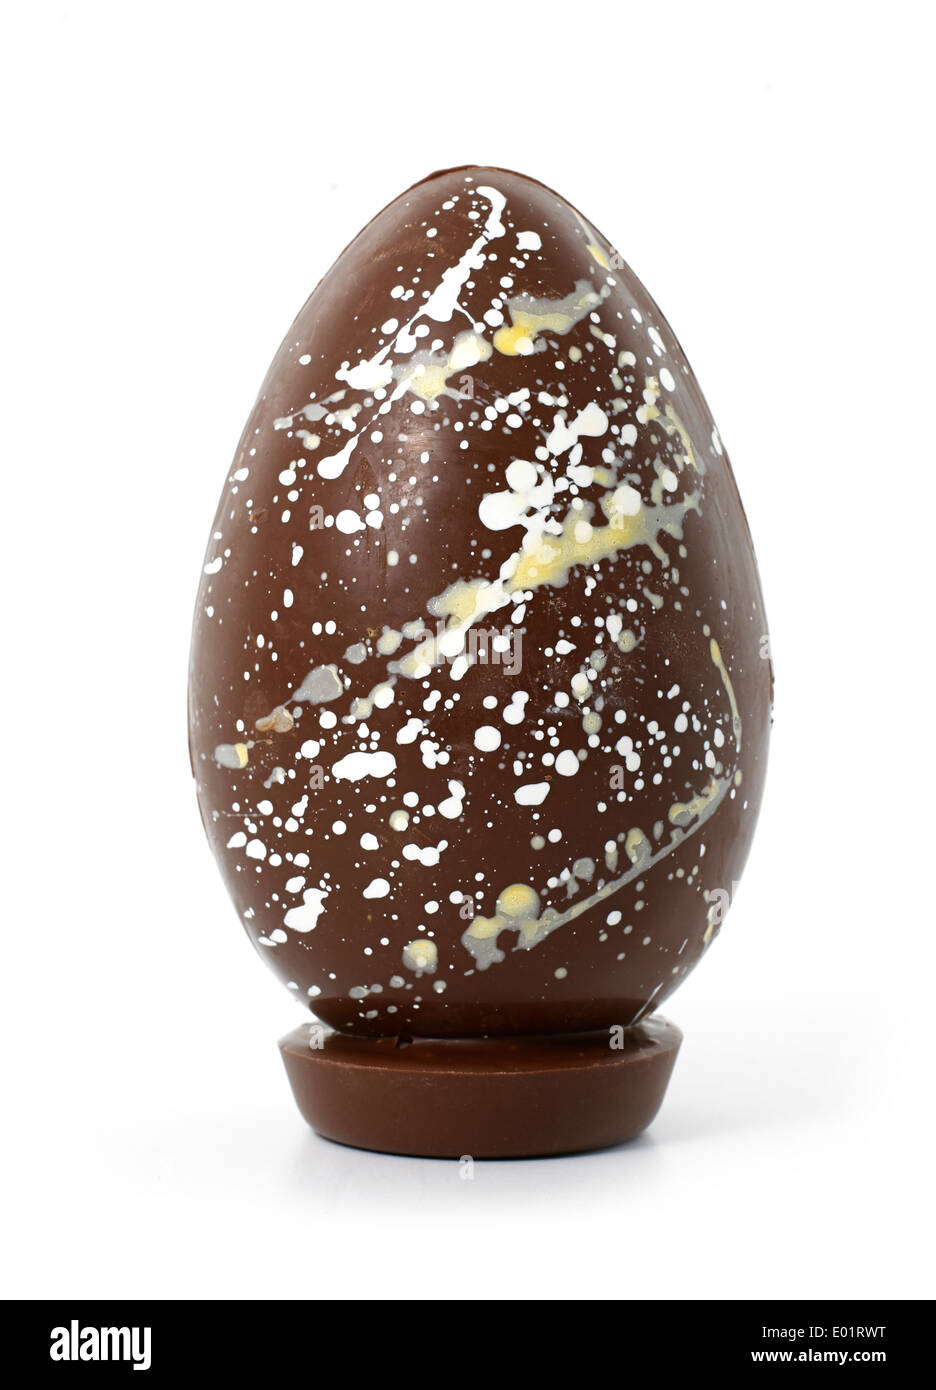 Grande uovo di cioccolato con aromi misti Foto Stock